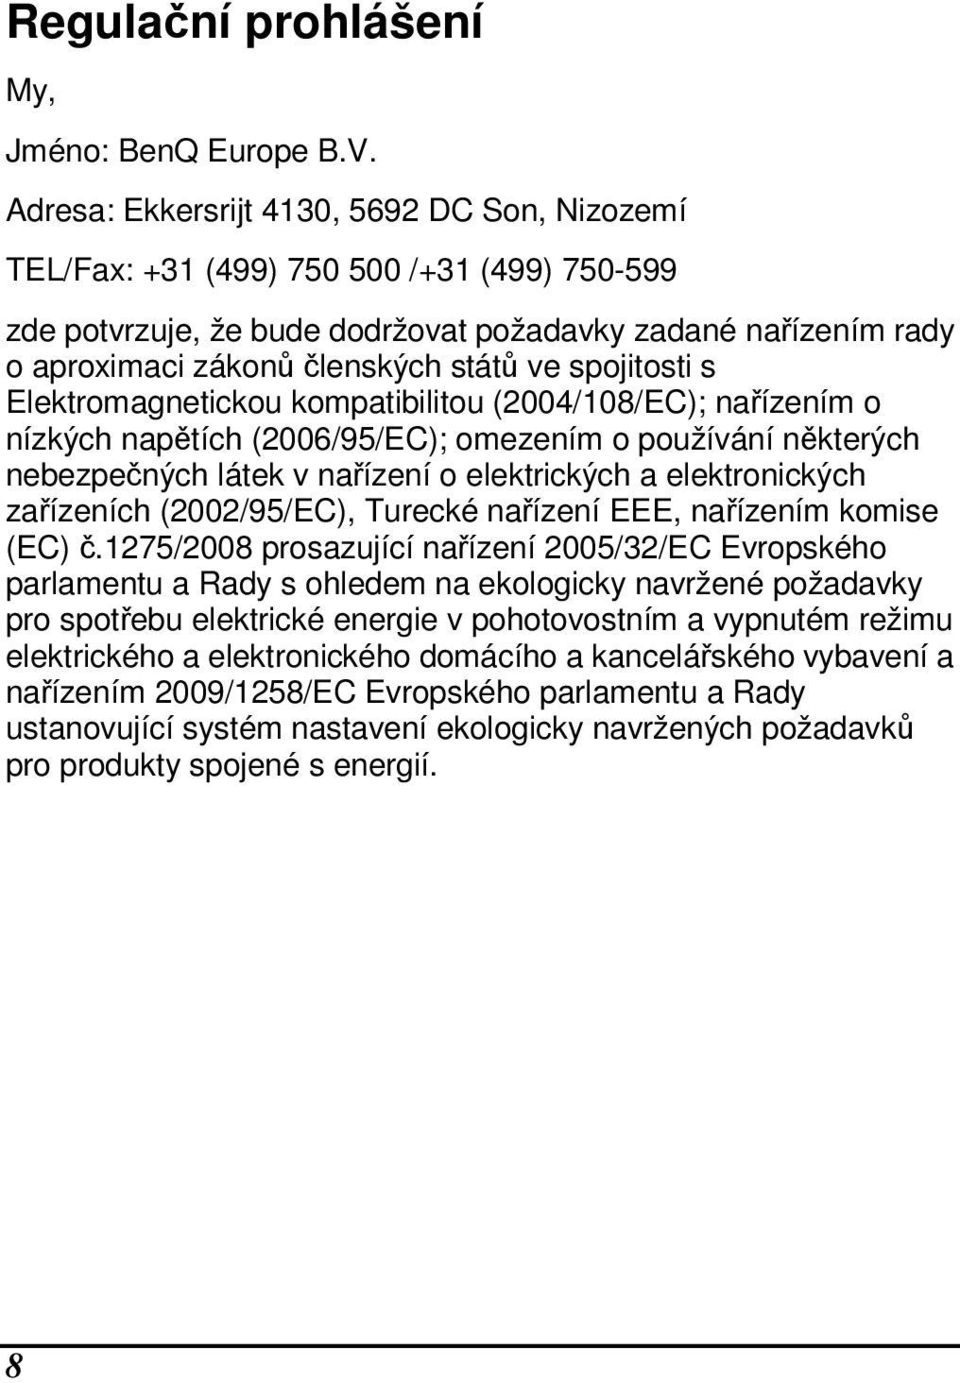 spojitosti s Elektromagnetickou kompatibilitou (2004/108/EC); nařízením o nízkých napětích (2006/95/EC); omezením o používání některých nebezpečných látek v nařízení o elektrických a elektronických